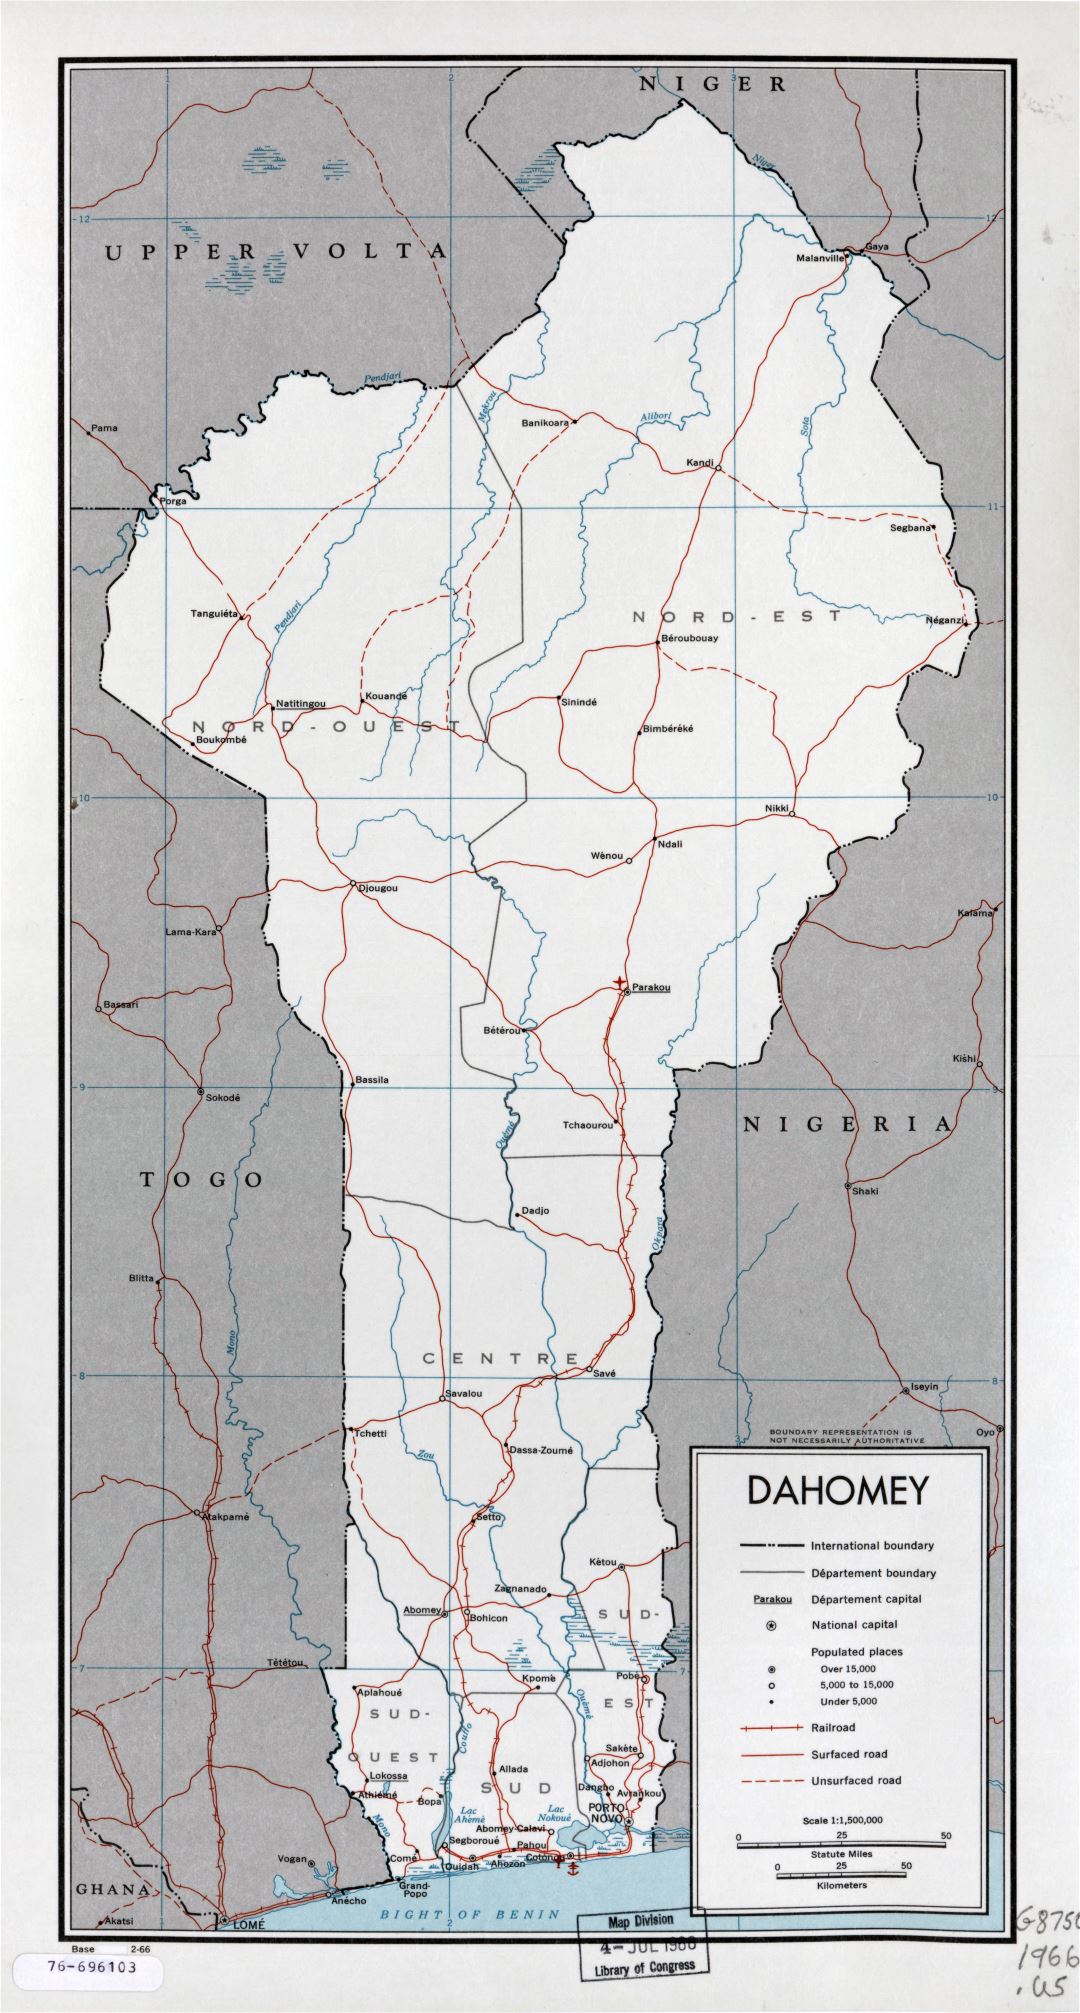 A gran escala mapa político y administrativo de Benin con carreteras, ferrocarriles, principales ciudades, puertos marítimos y aeropuertos - 1966